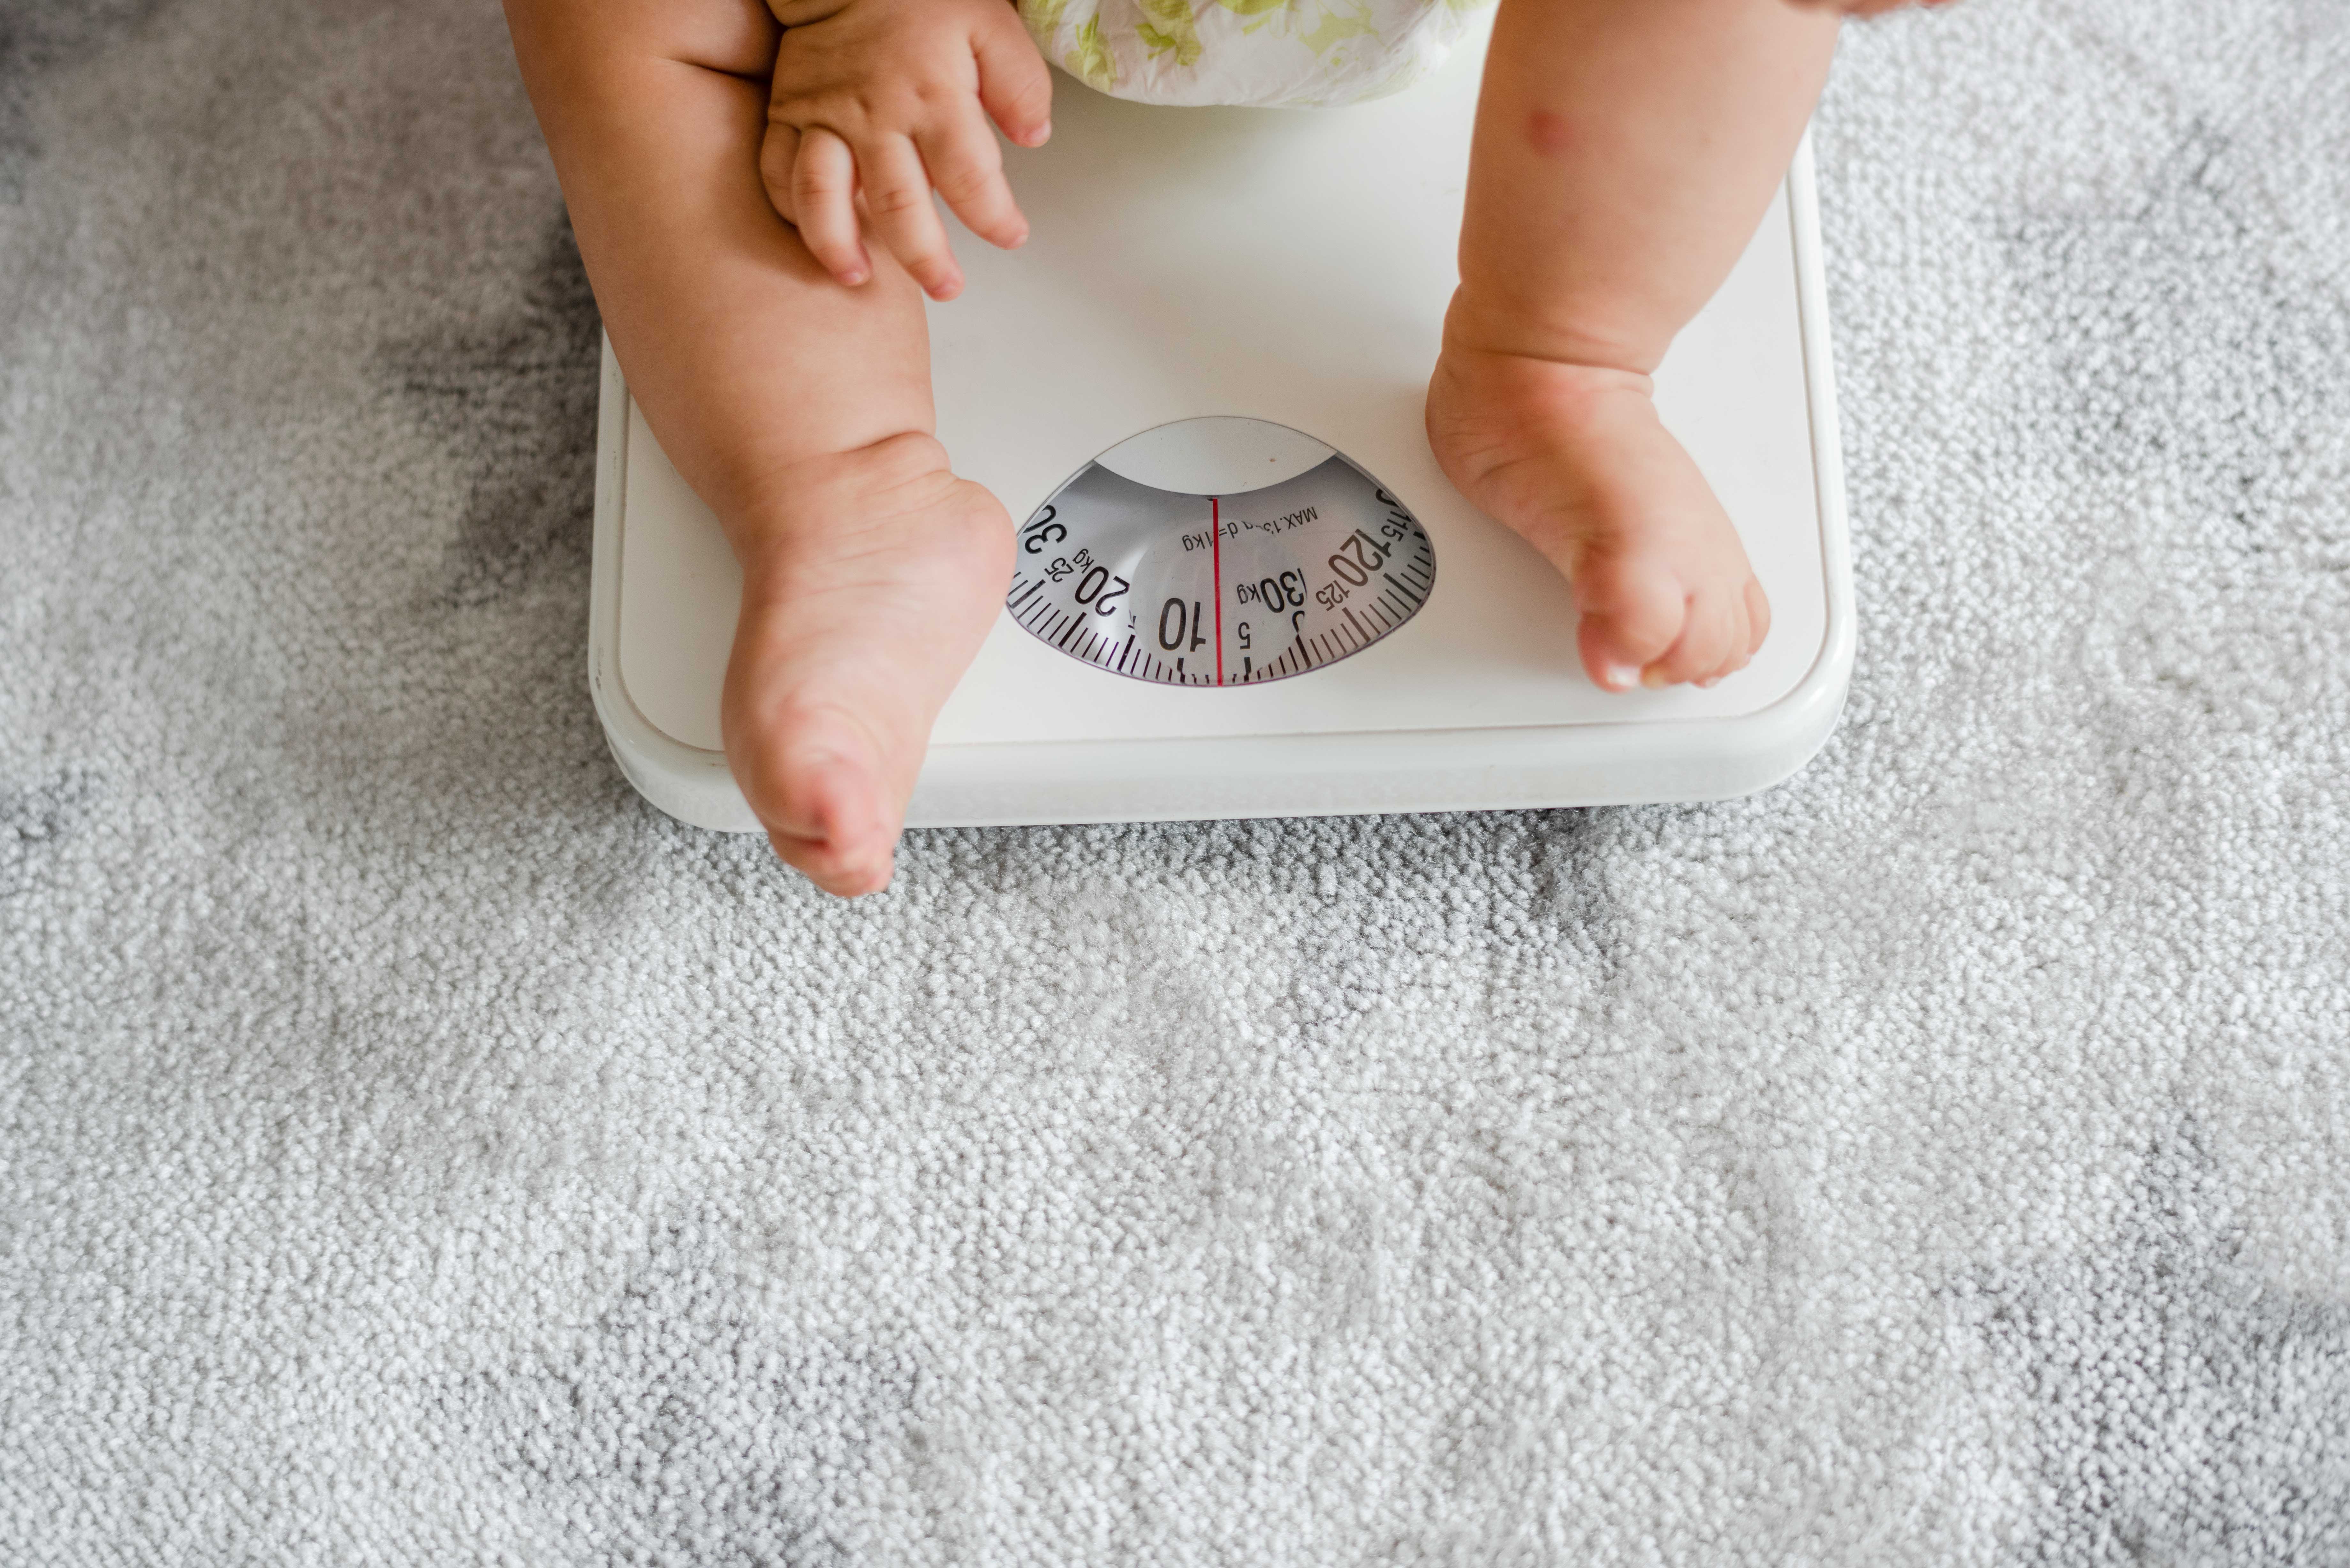 Theo dõi cân nặng của trẻ để tránh các bệnh về sau